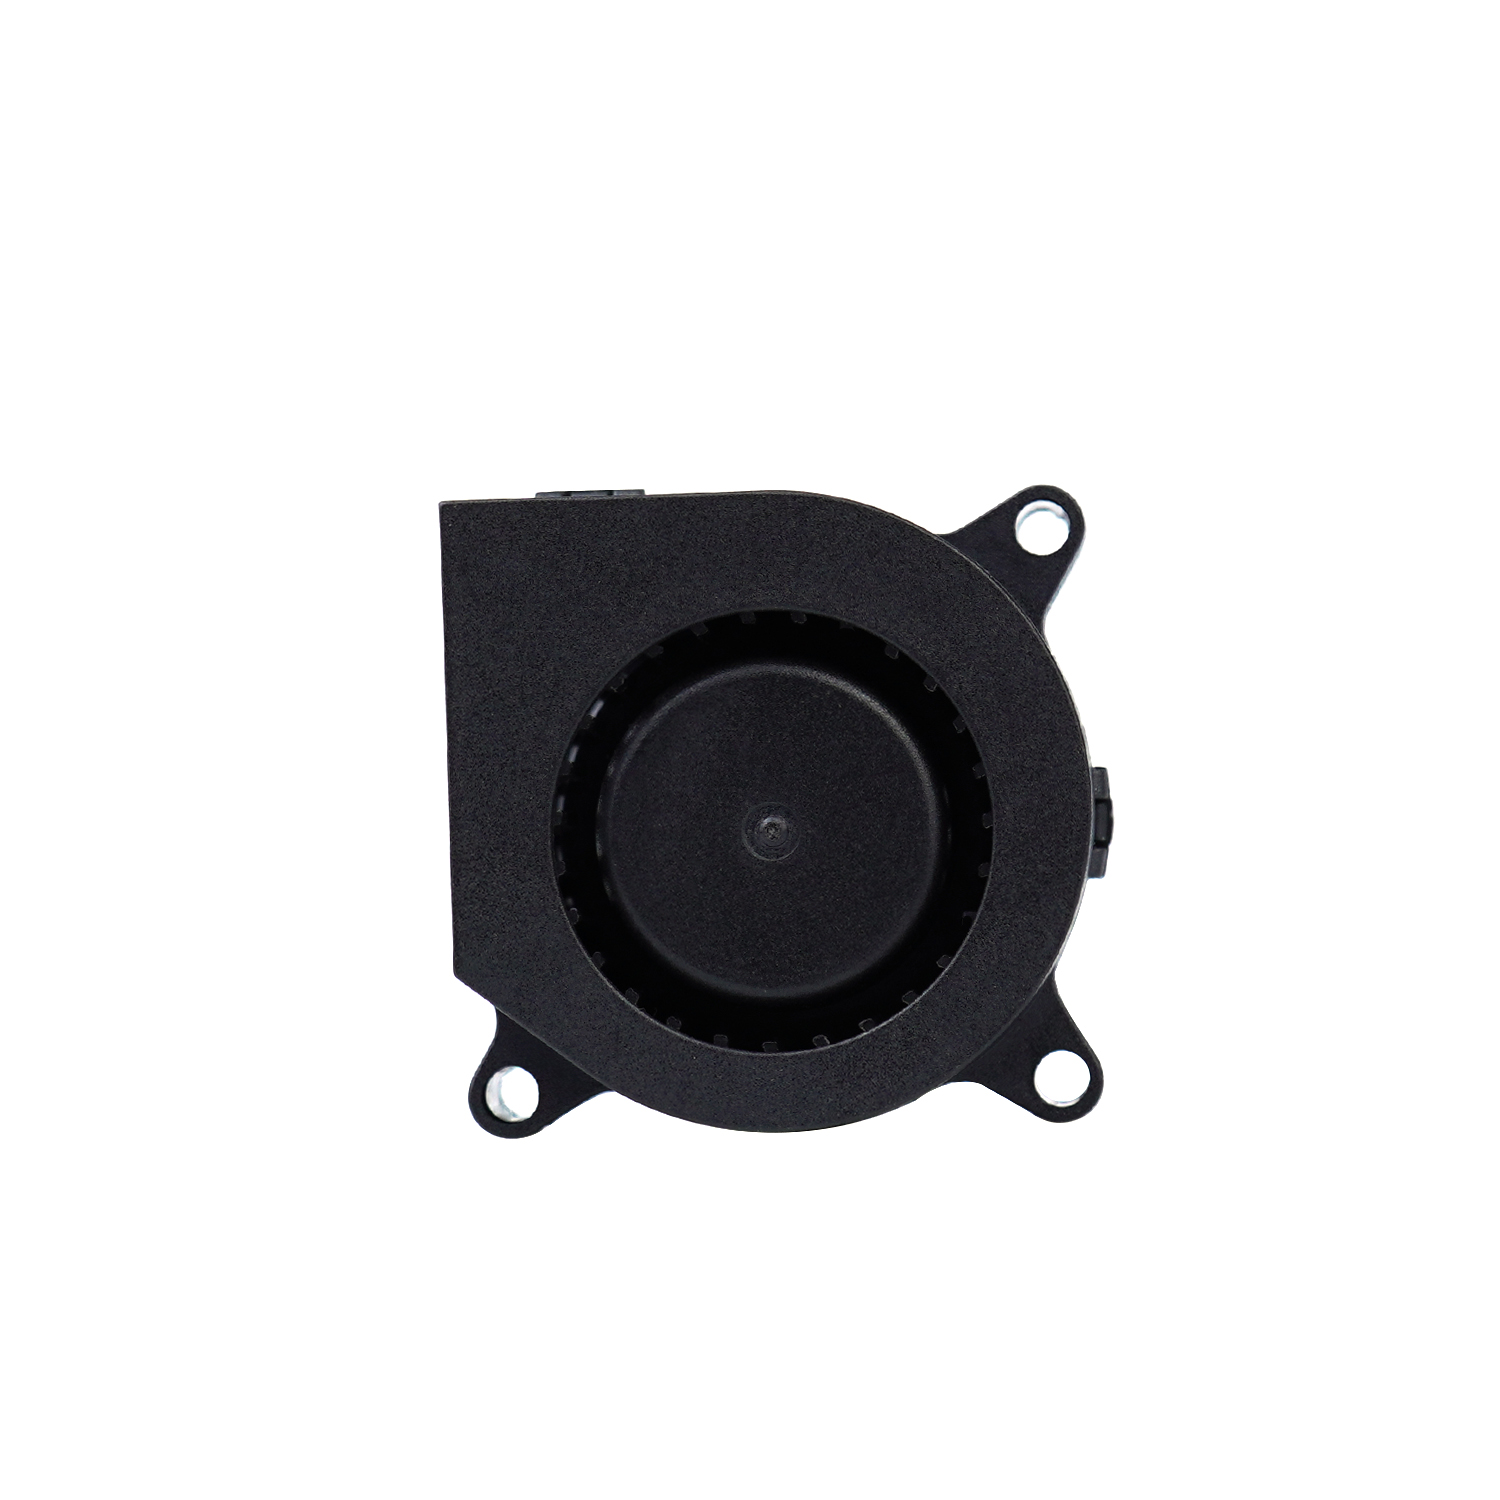  40mm 40x40x20mm 5v 12v 24v DC centrifugal blower fan